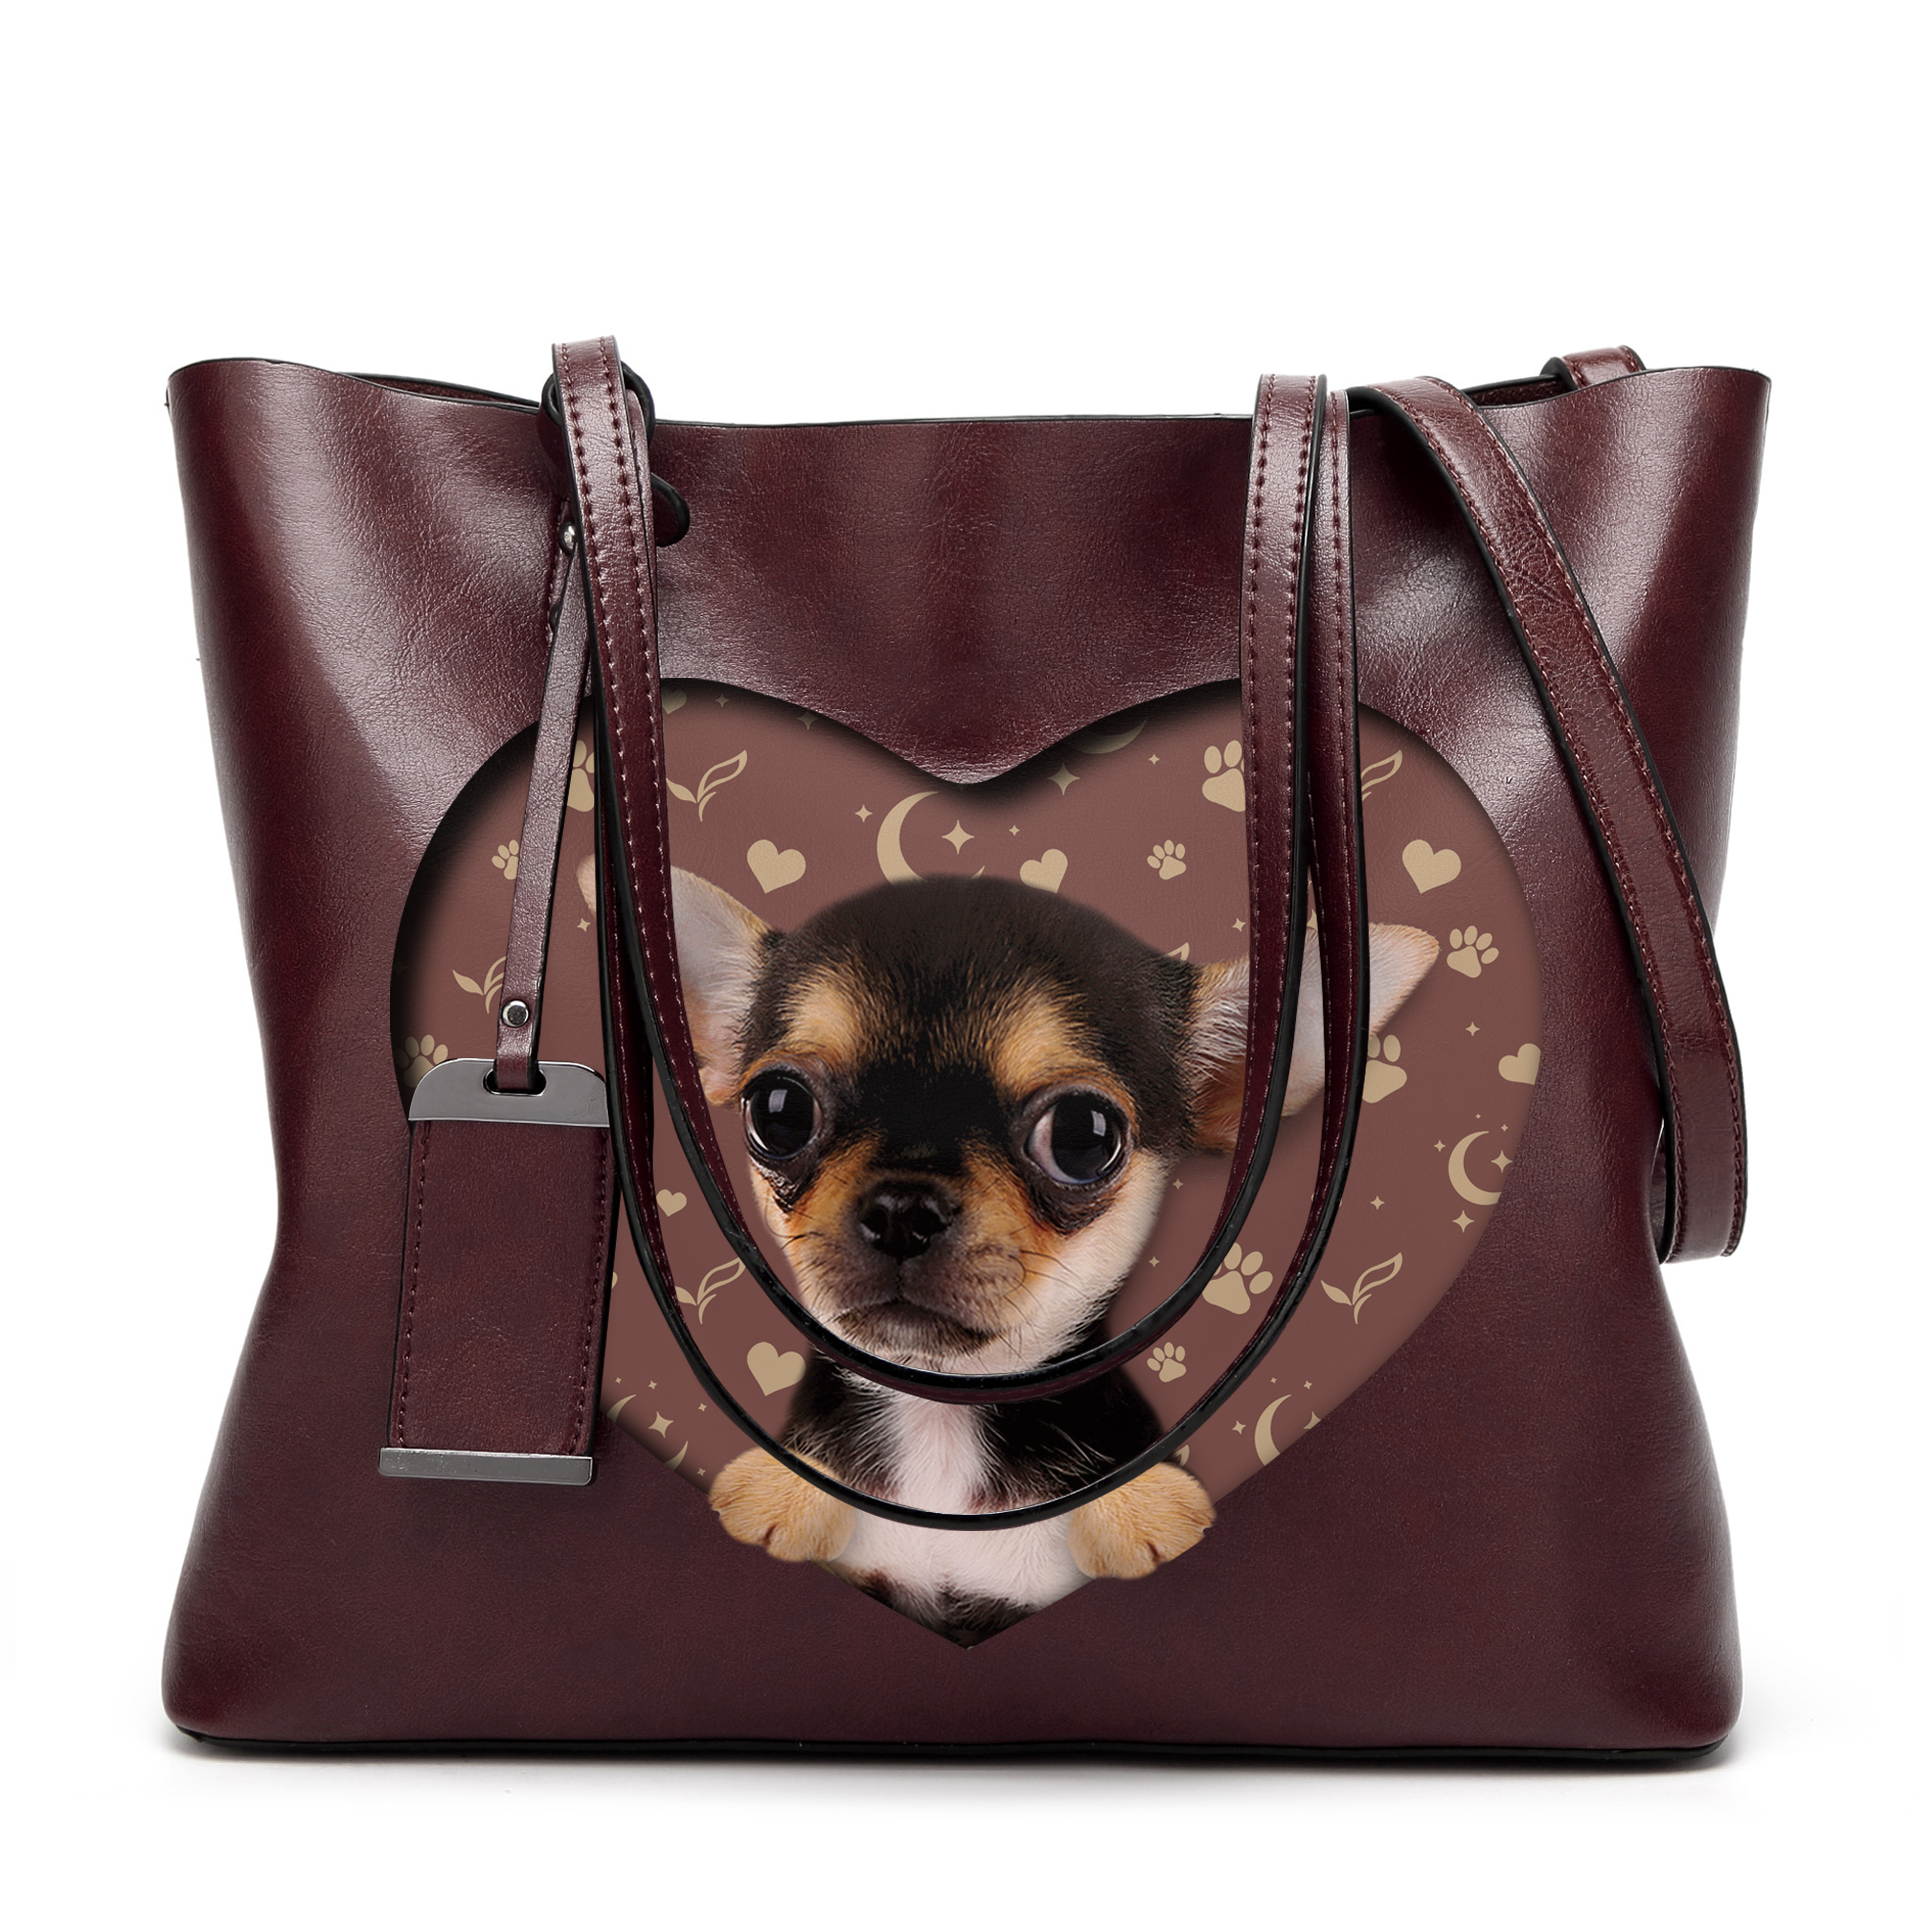 Chihuahua Glamour Handbag